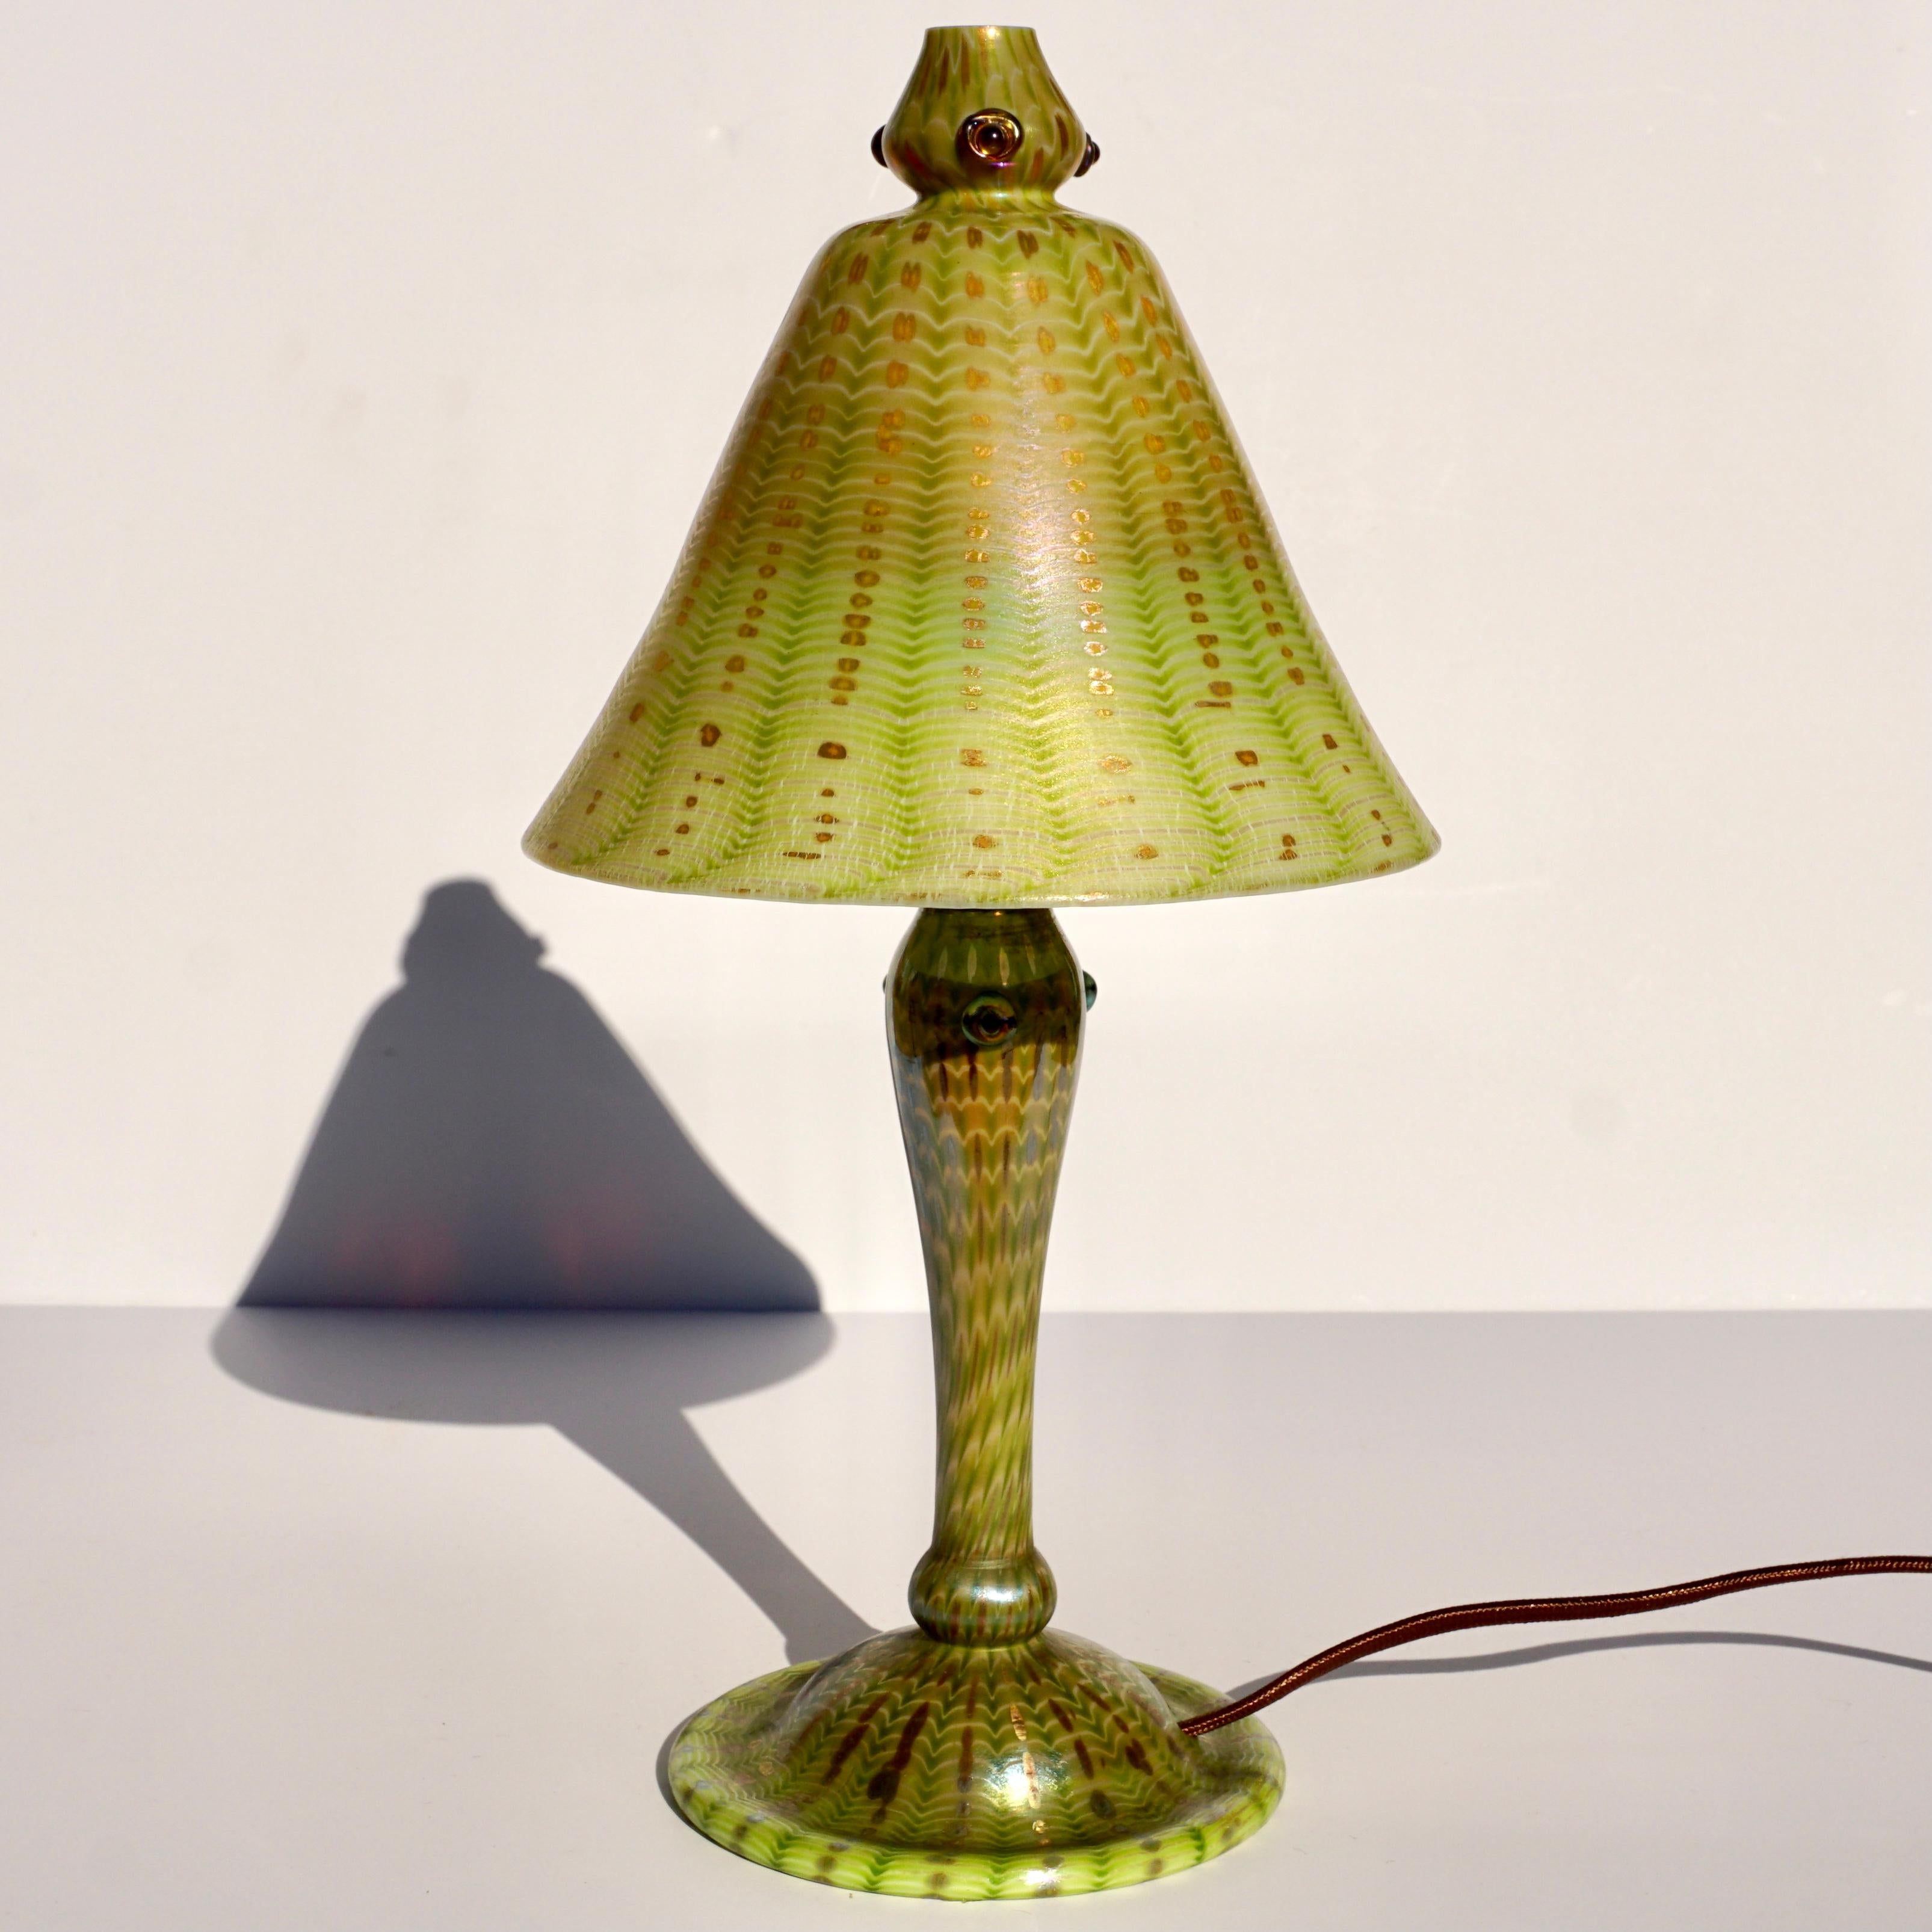 Lampe arabe Tiffany Favrile. Art nouveau, vers 1910 

La lampe arabe Tiffany a un abat-jour et une base en verre soufflé. L'abat-jour est décoré d'un motif de fermeture éclair vert irisé sur un fond de vague or et jaune. La partie supérieure de